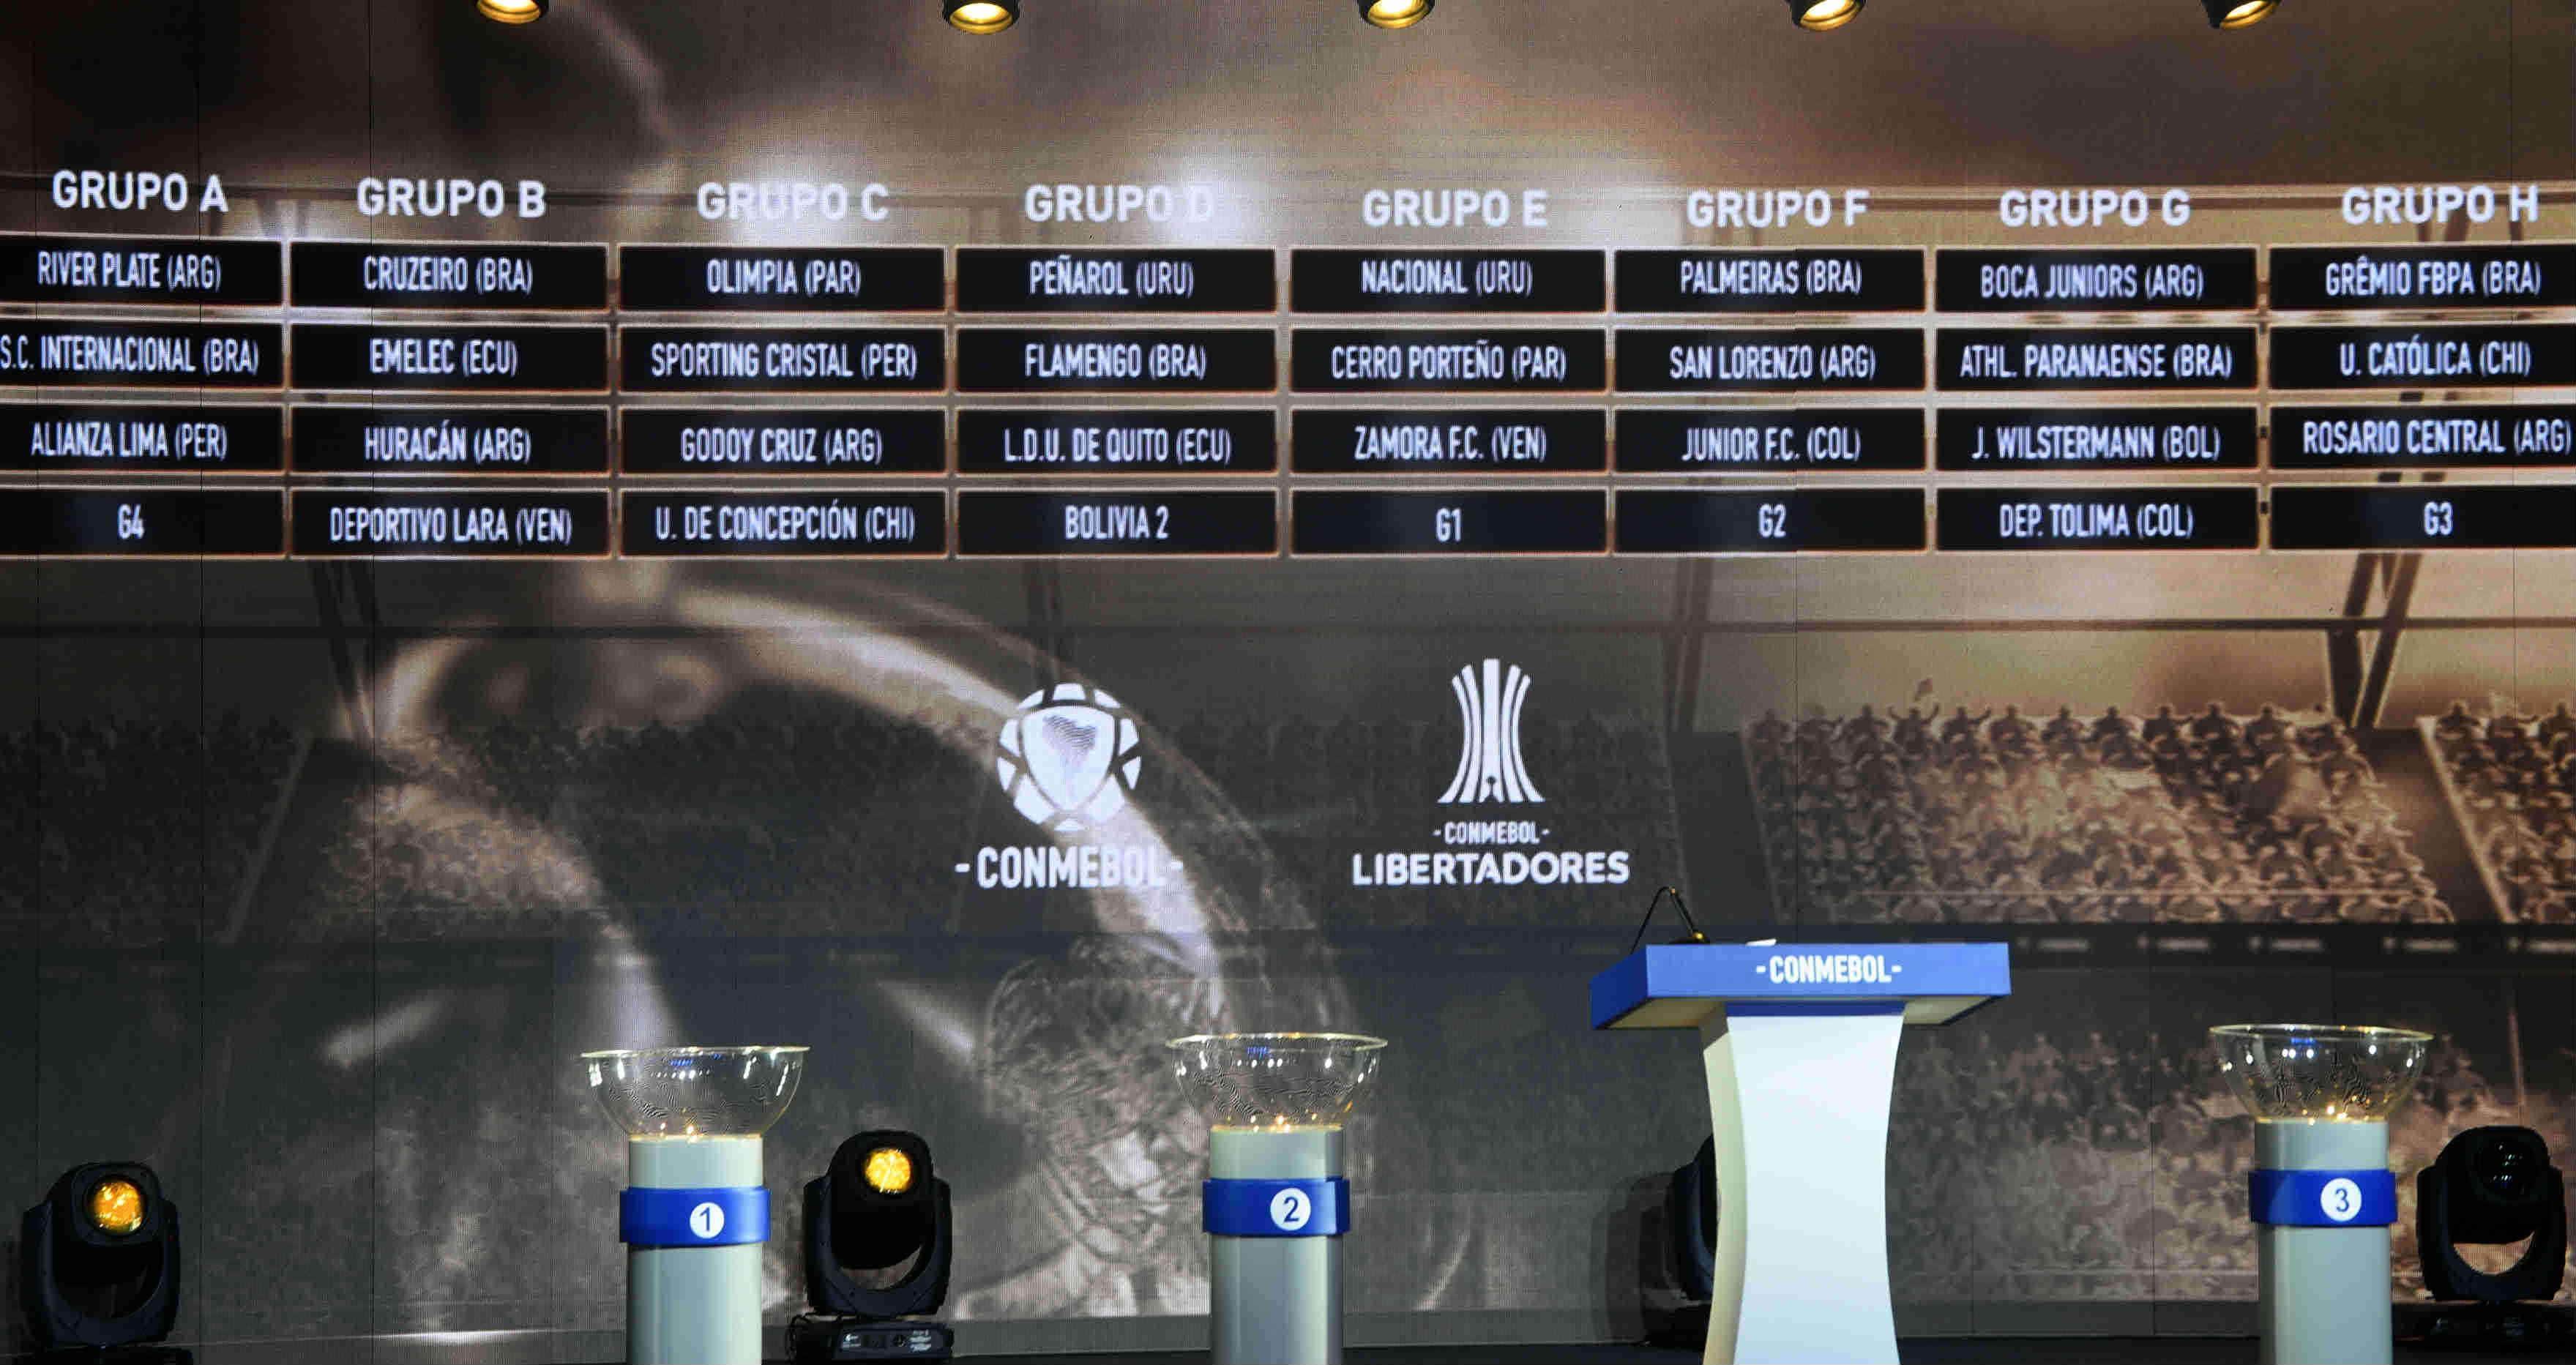 Conmebol Libertadores 2019